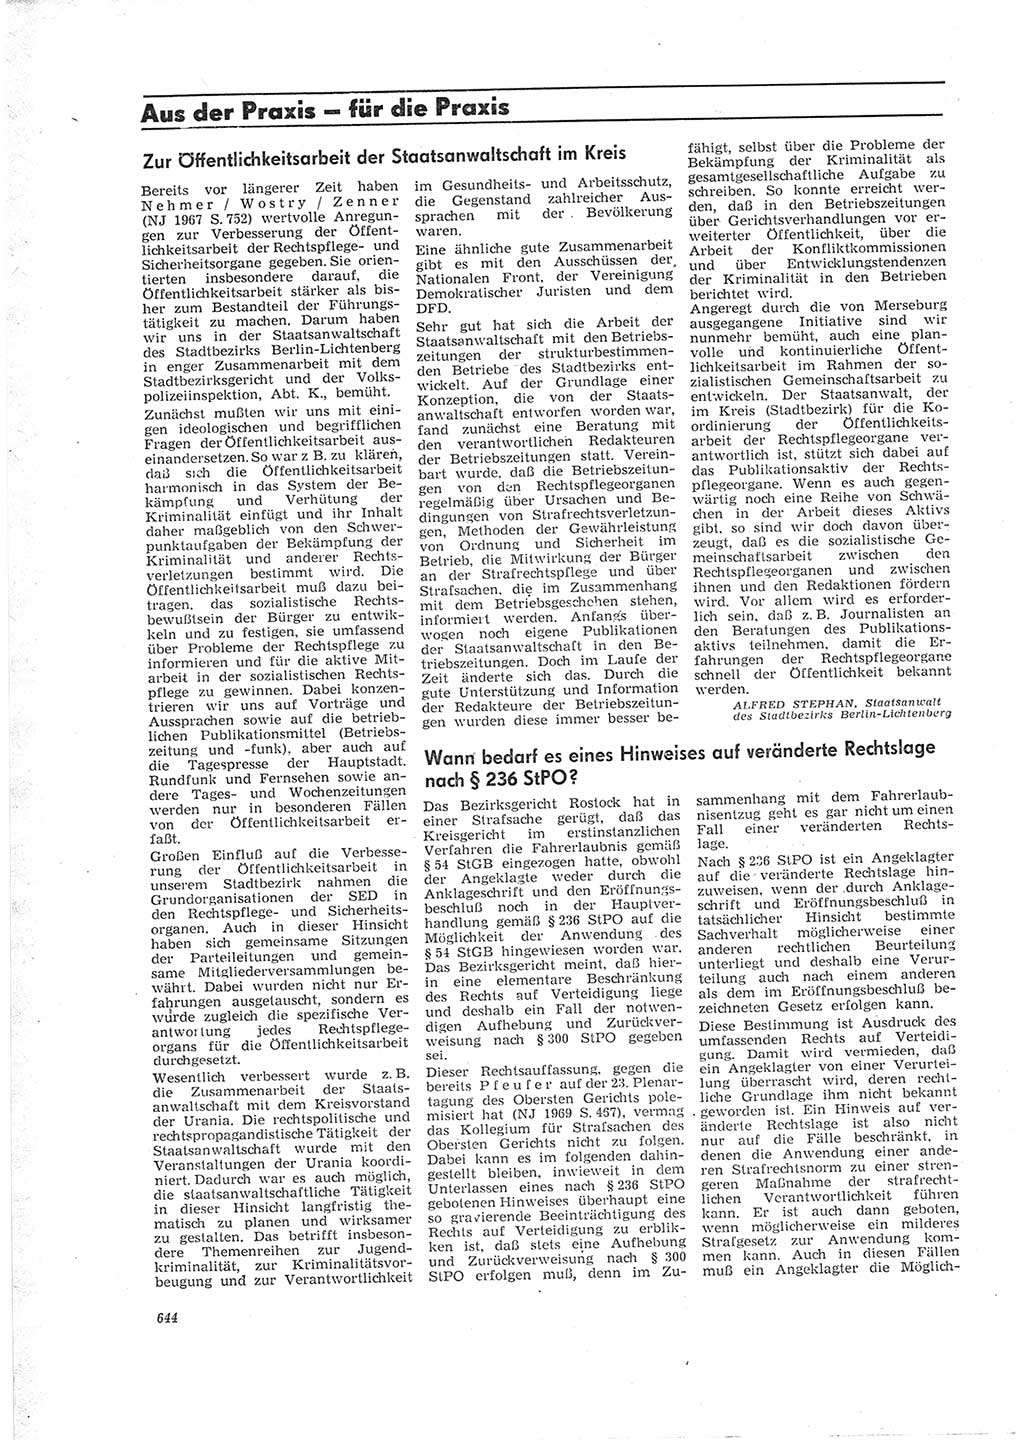 Neue Justiz (NJ), Zeitschrift für Recht und Rechtswissenschaft [Deutsche Demokratische Republik (DDR)], 23. Jahrgang 1969, Seite 644 (NJ DDR 1969, S. 644)